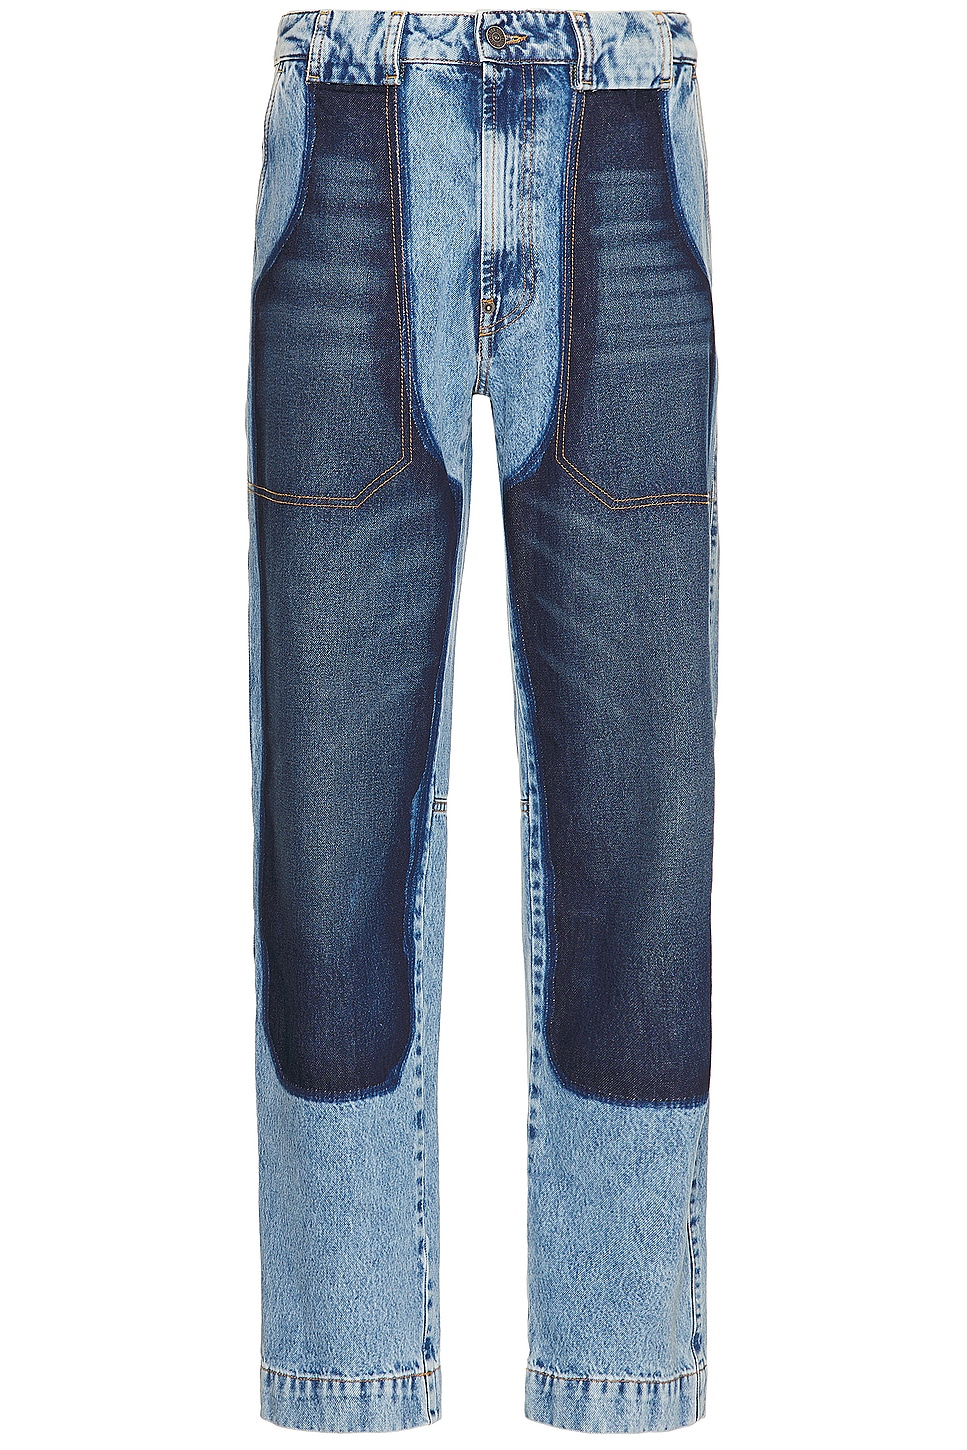 Image 1 of Diesel Jeans in Denim